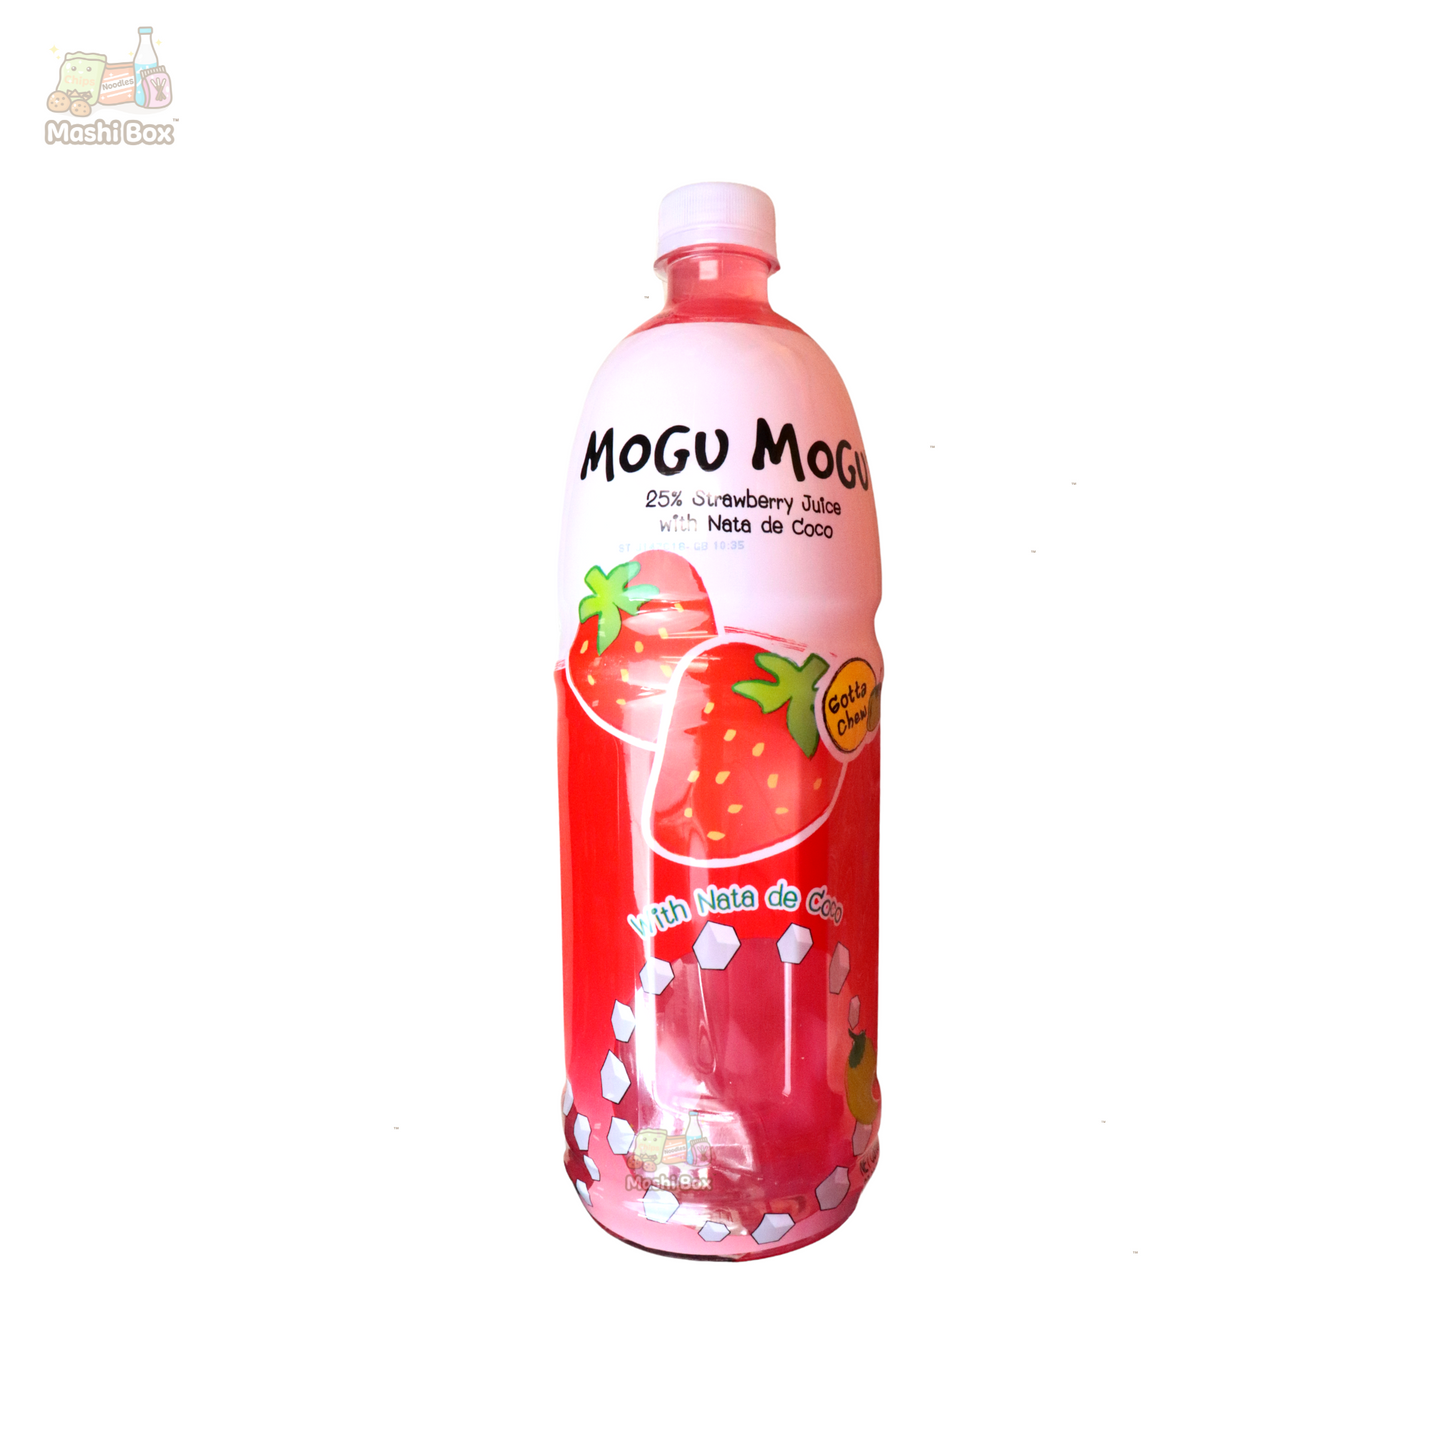 (Large) Mogu Mogu Juice with Nata de Coco (halal)